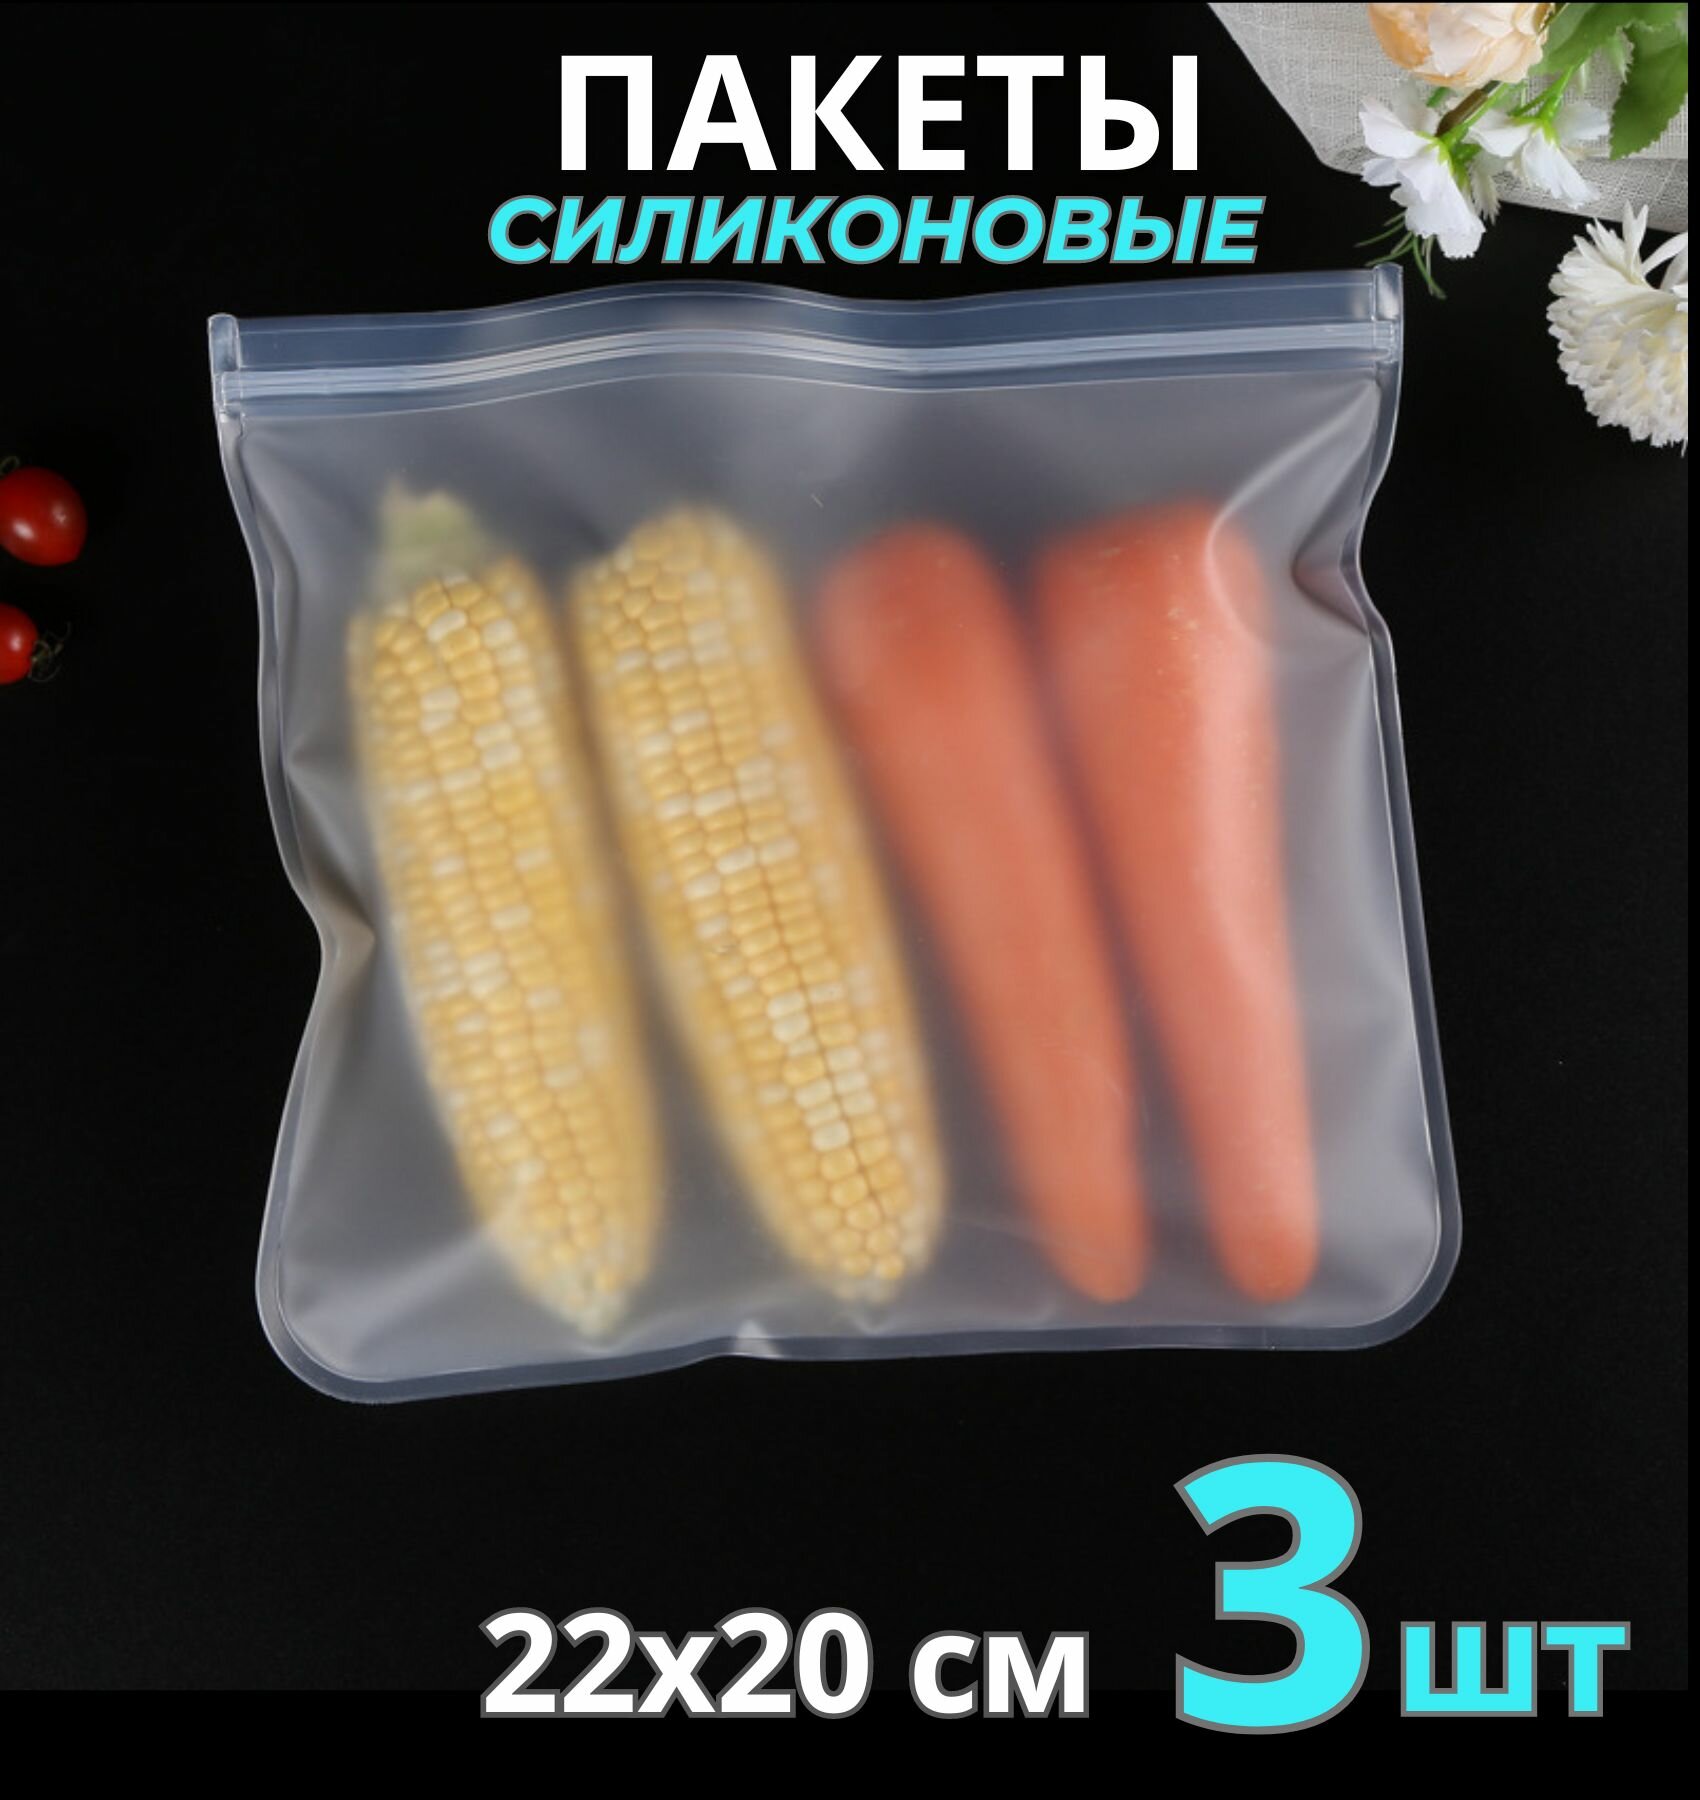 Пакет для хранения продуктов, силиконовый (22*20 см) 3 шт / зип пакеты для продуктов / пакет для заморозки / пакеты пищевые / zip lock